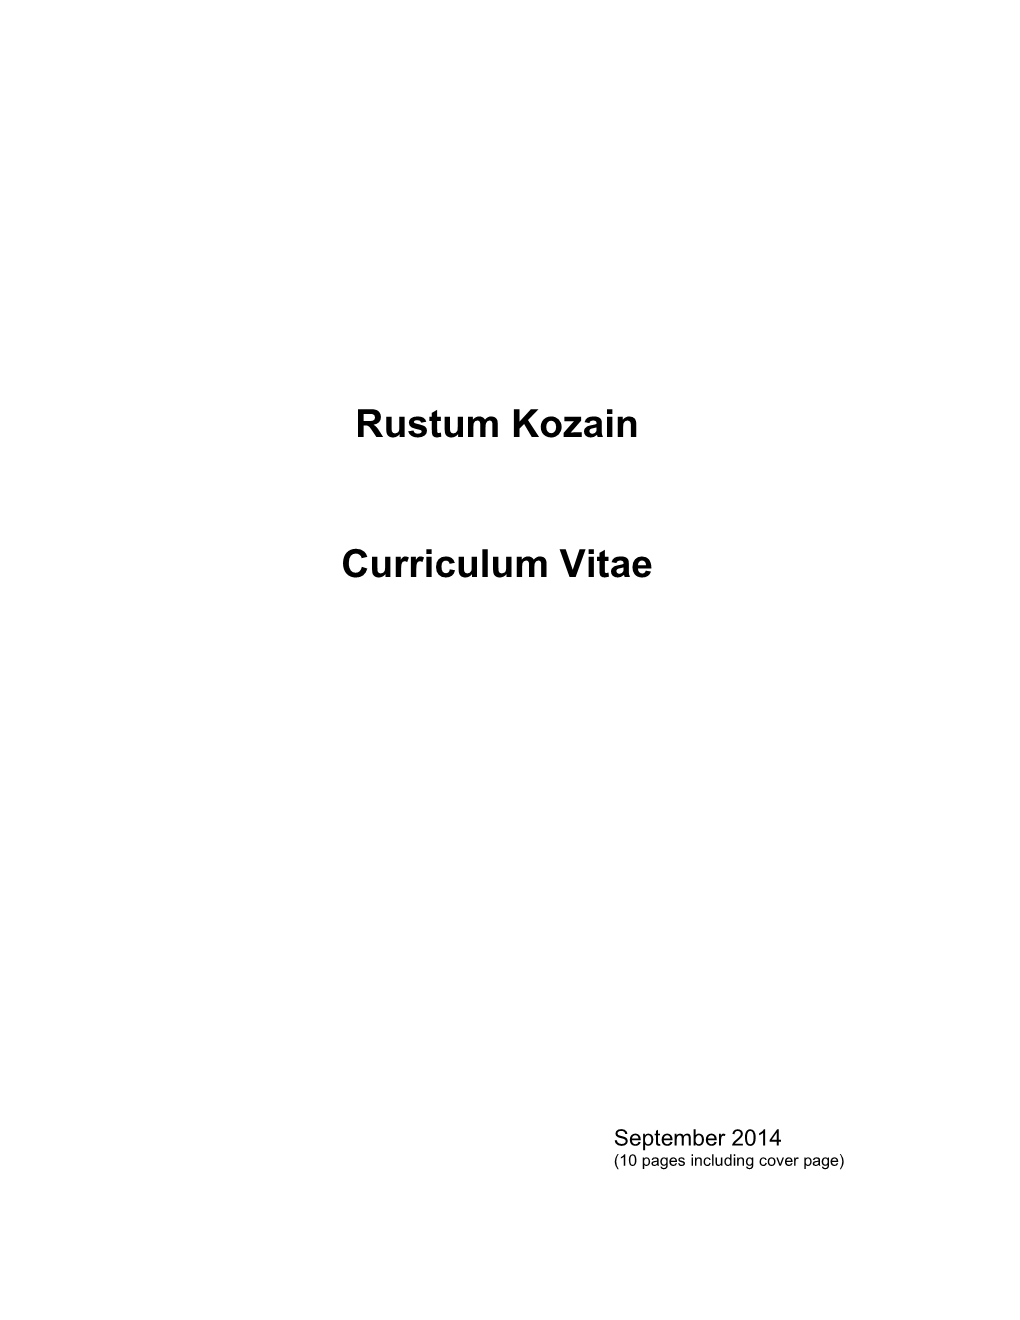 Rustum Kozain Curriculum Vitae